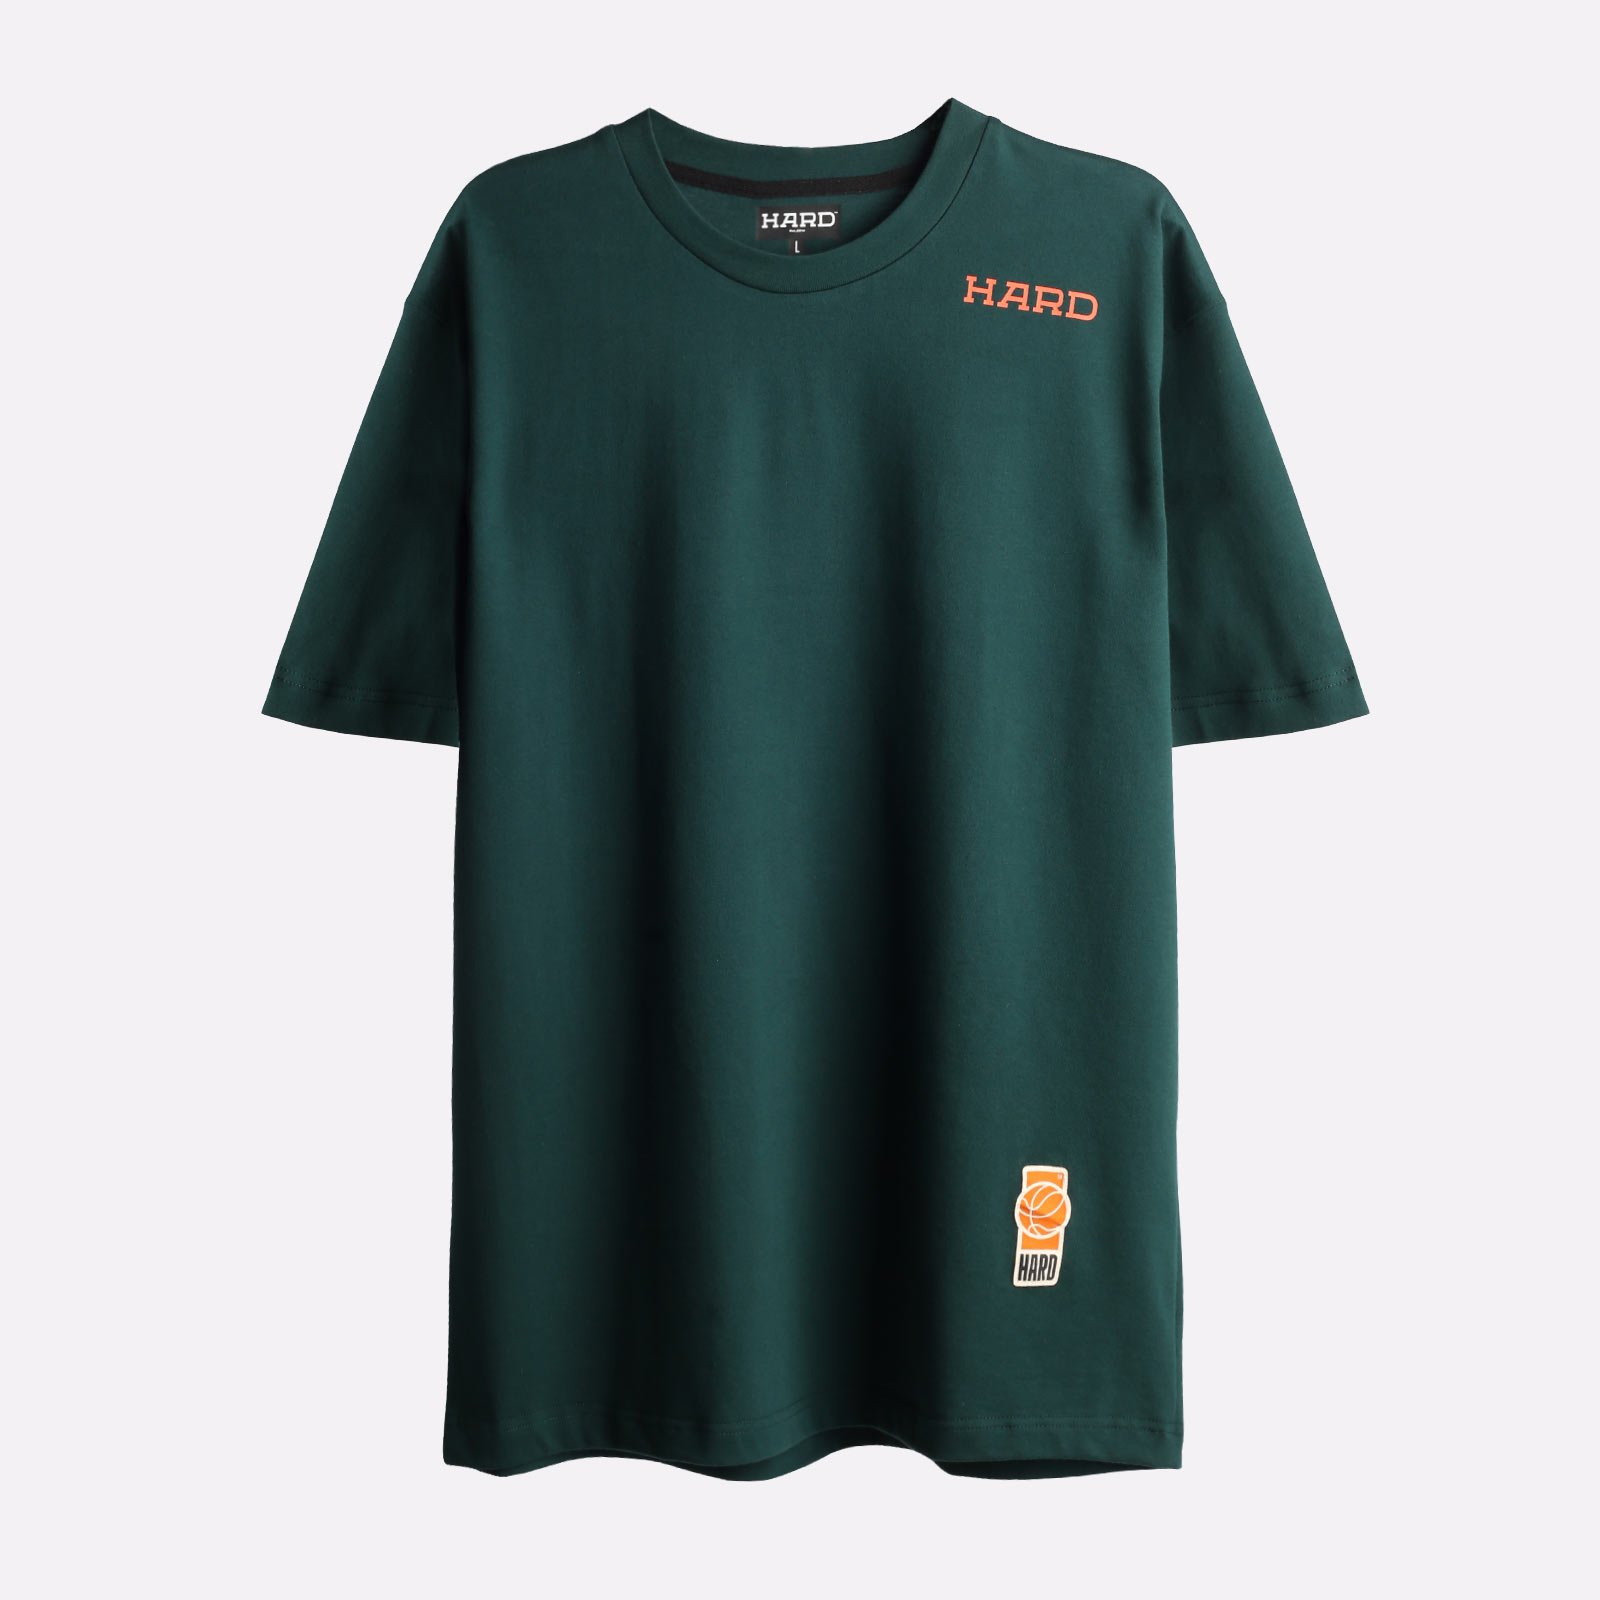 мужская футболка Hard Green Tee  (Tee-hard-green) Tee-hard-green - цена, описание, фото 1